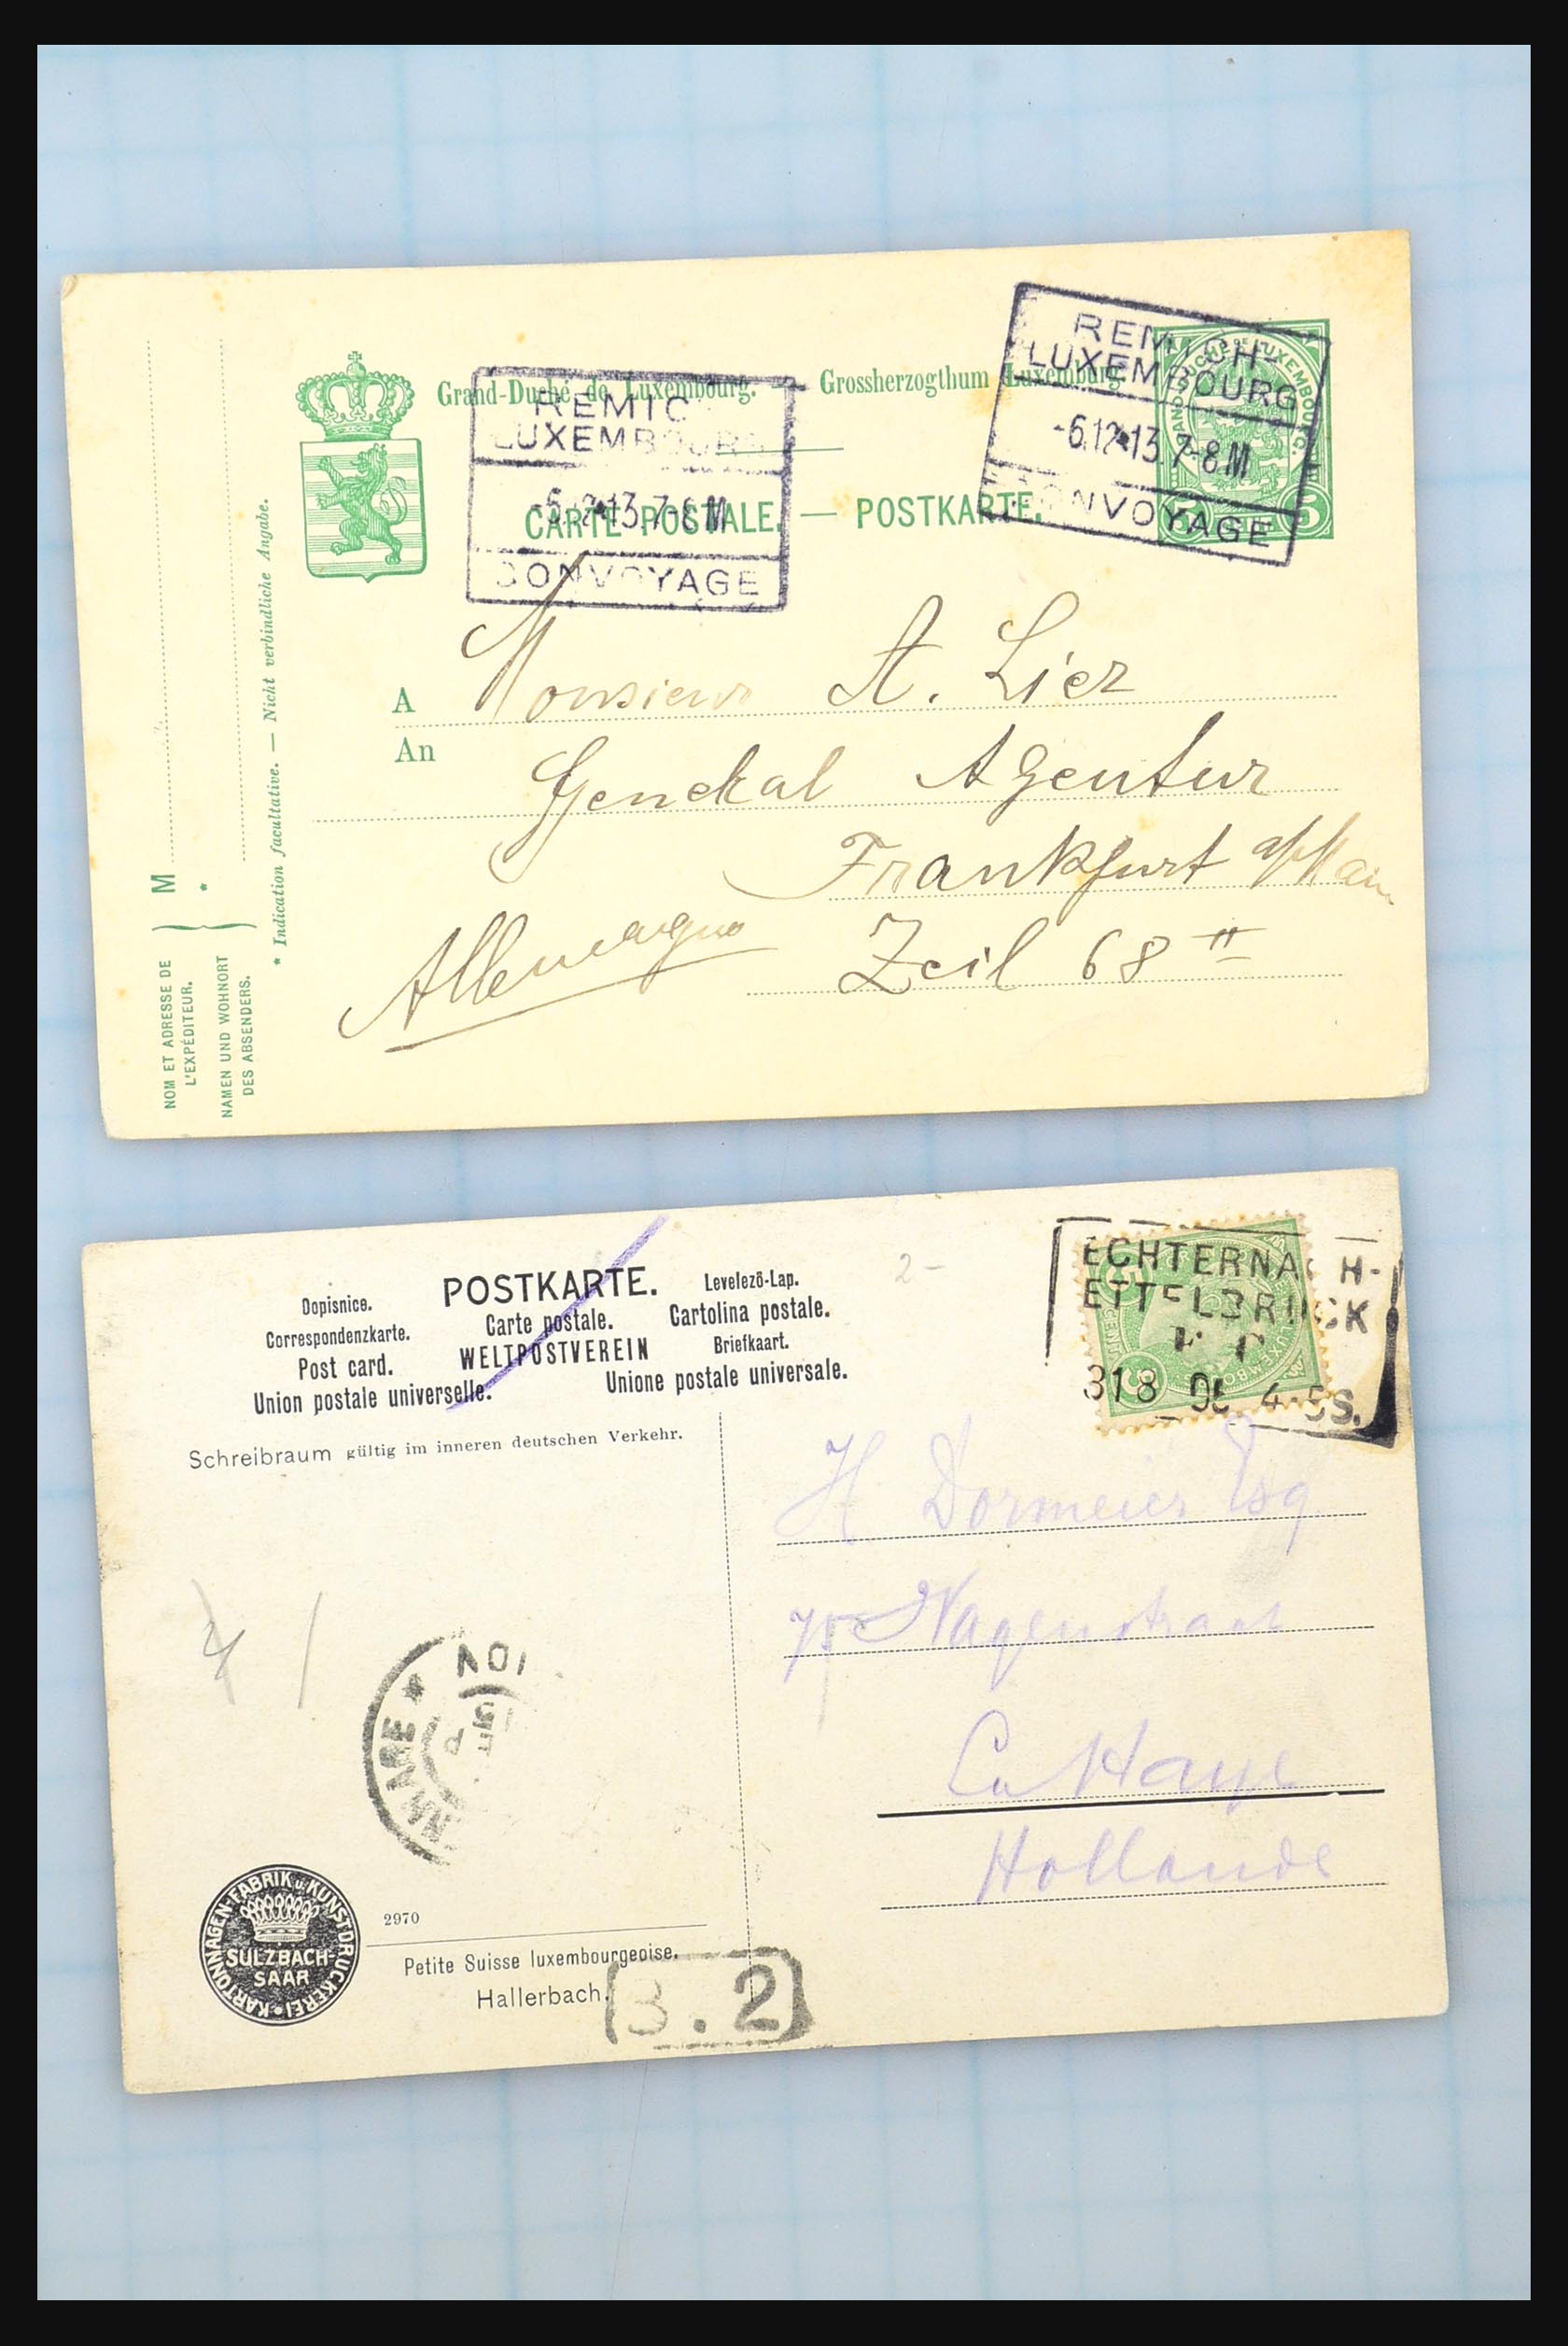 31358 102 - 31358 Portugal/Luxemburg/Griekenland brieven 1880-1960.